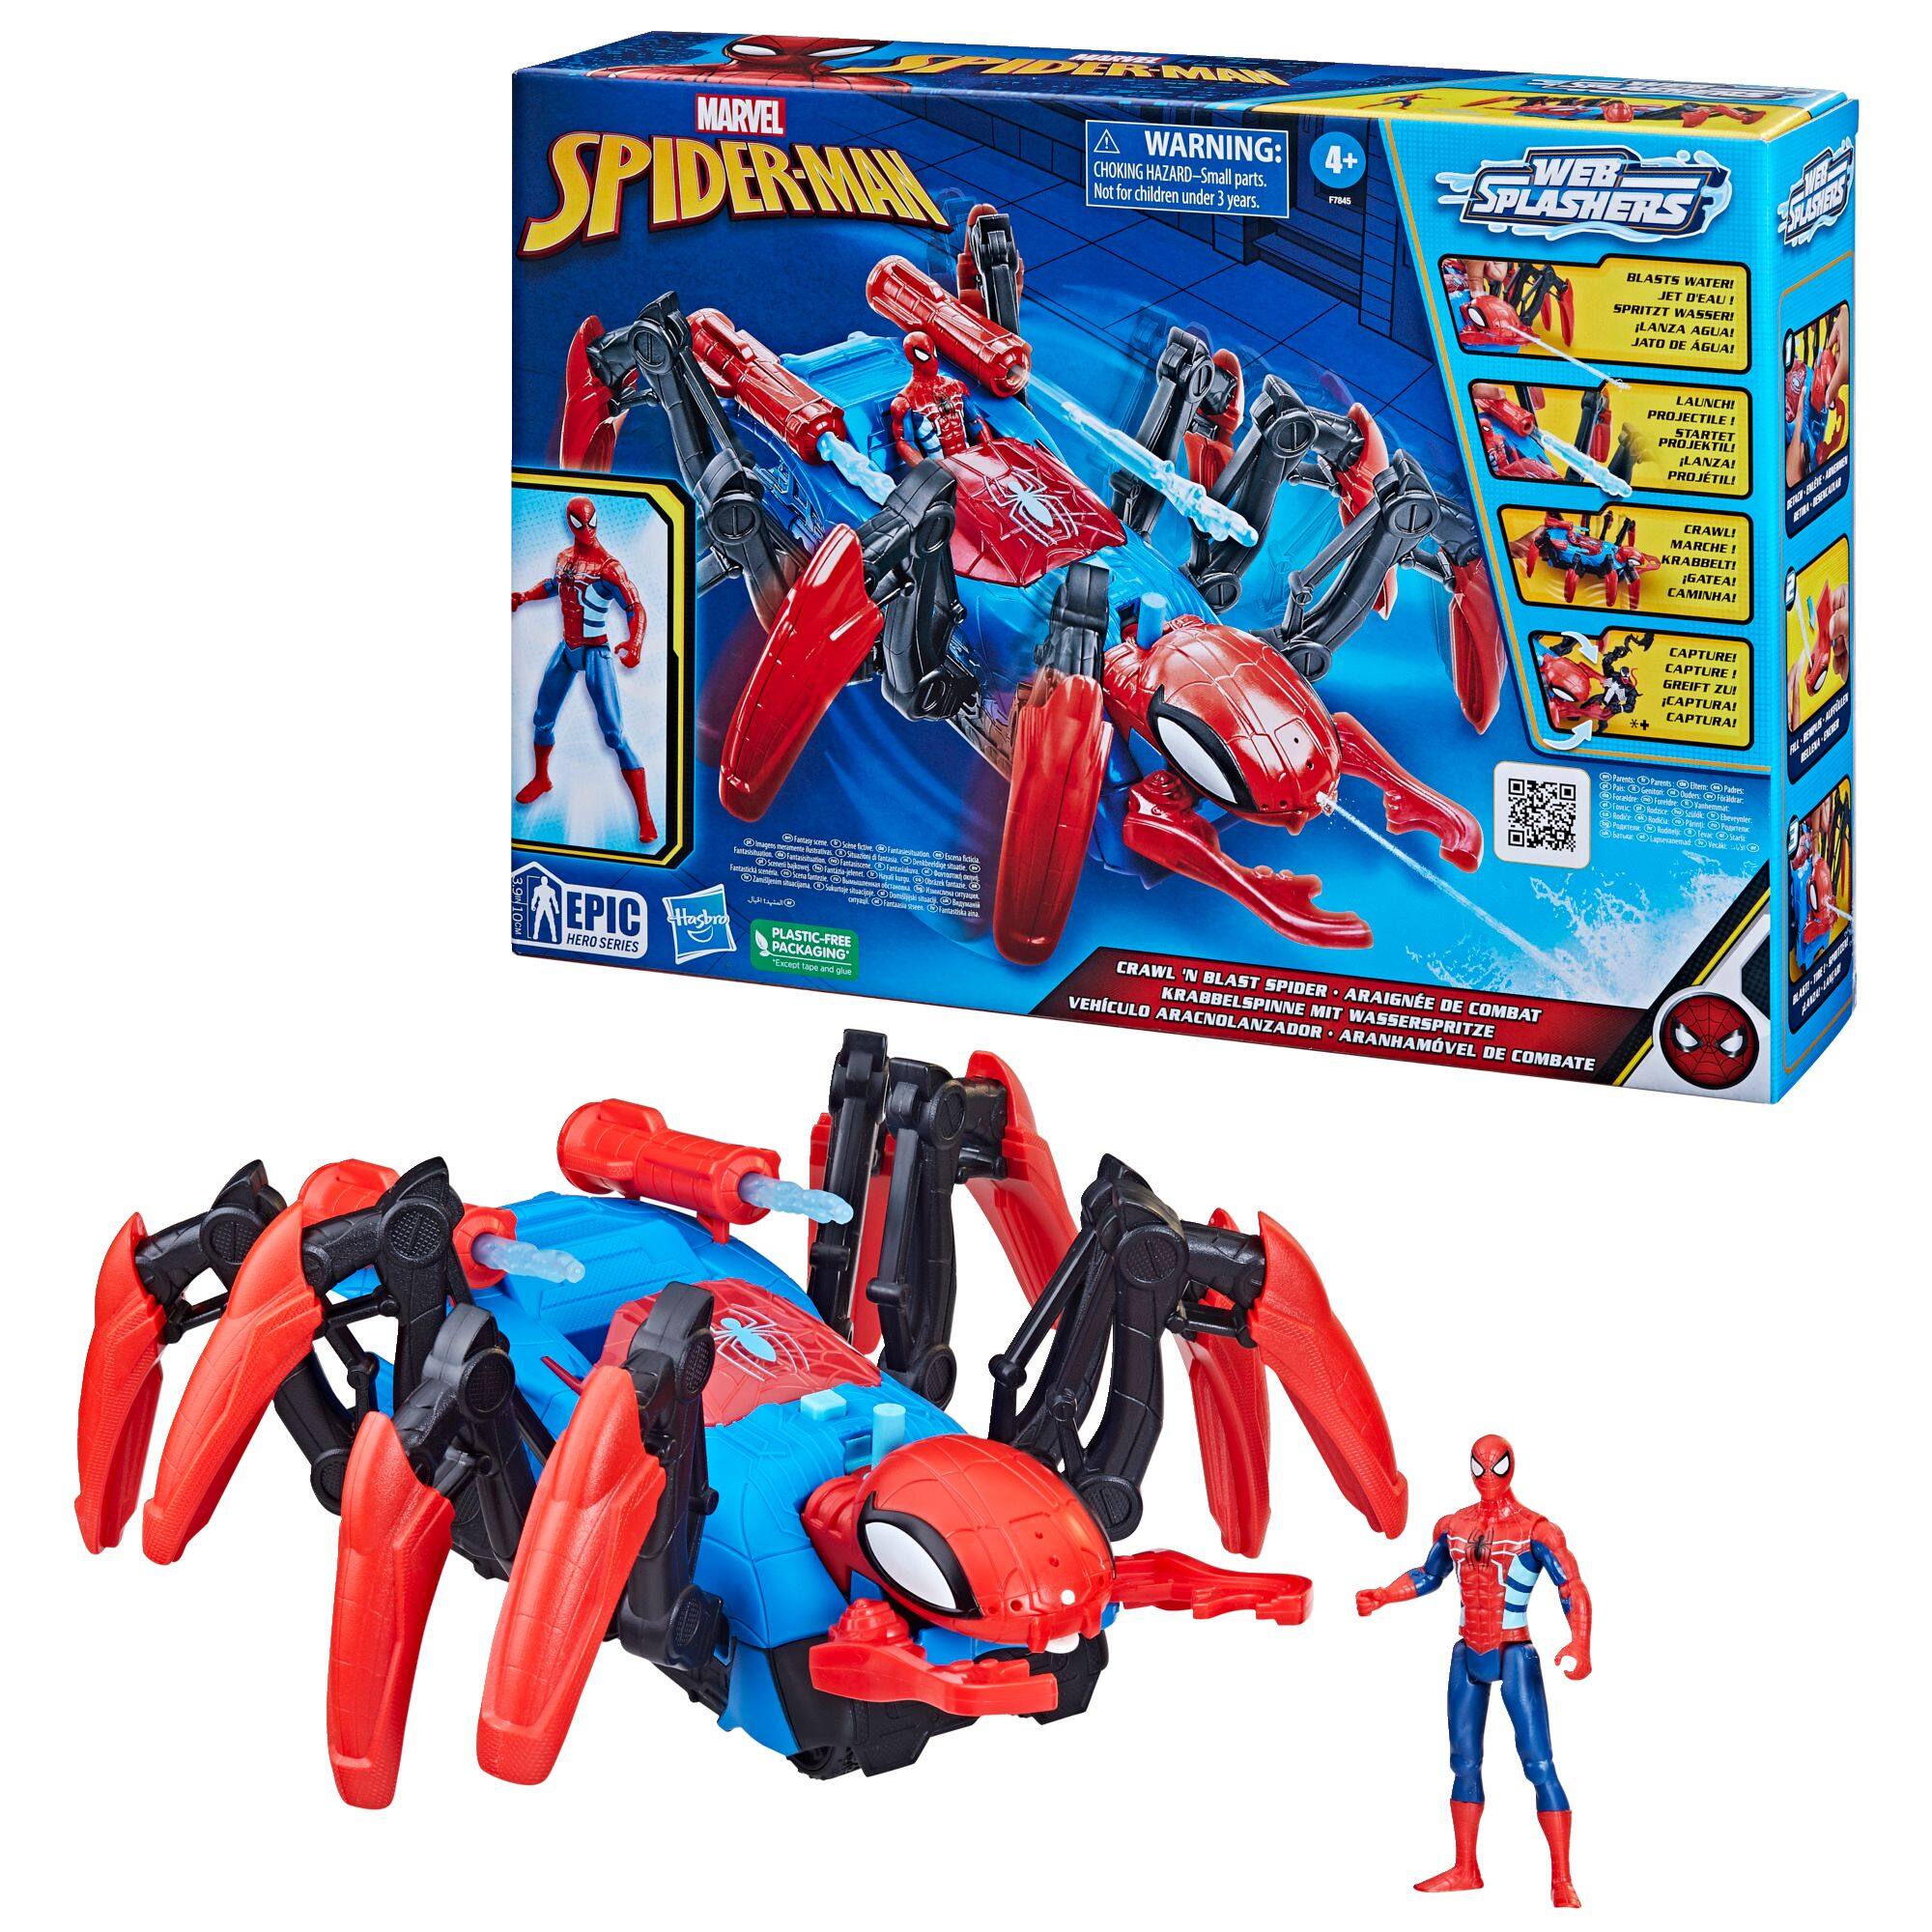 Moto spider-man + Figurine Spiderman 15 cm Bleu Et Rouge - Personnage  Articulé Marvel - Jouet - Set garçon + 1 carte